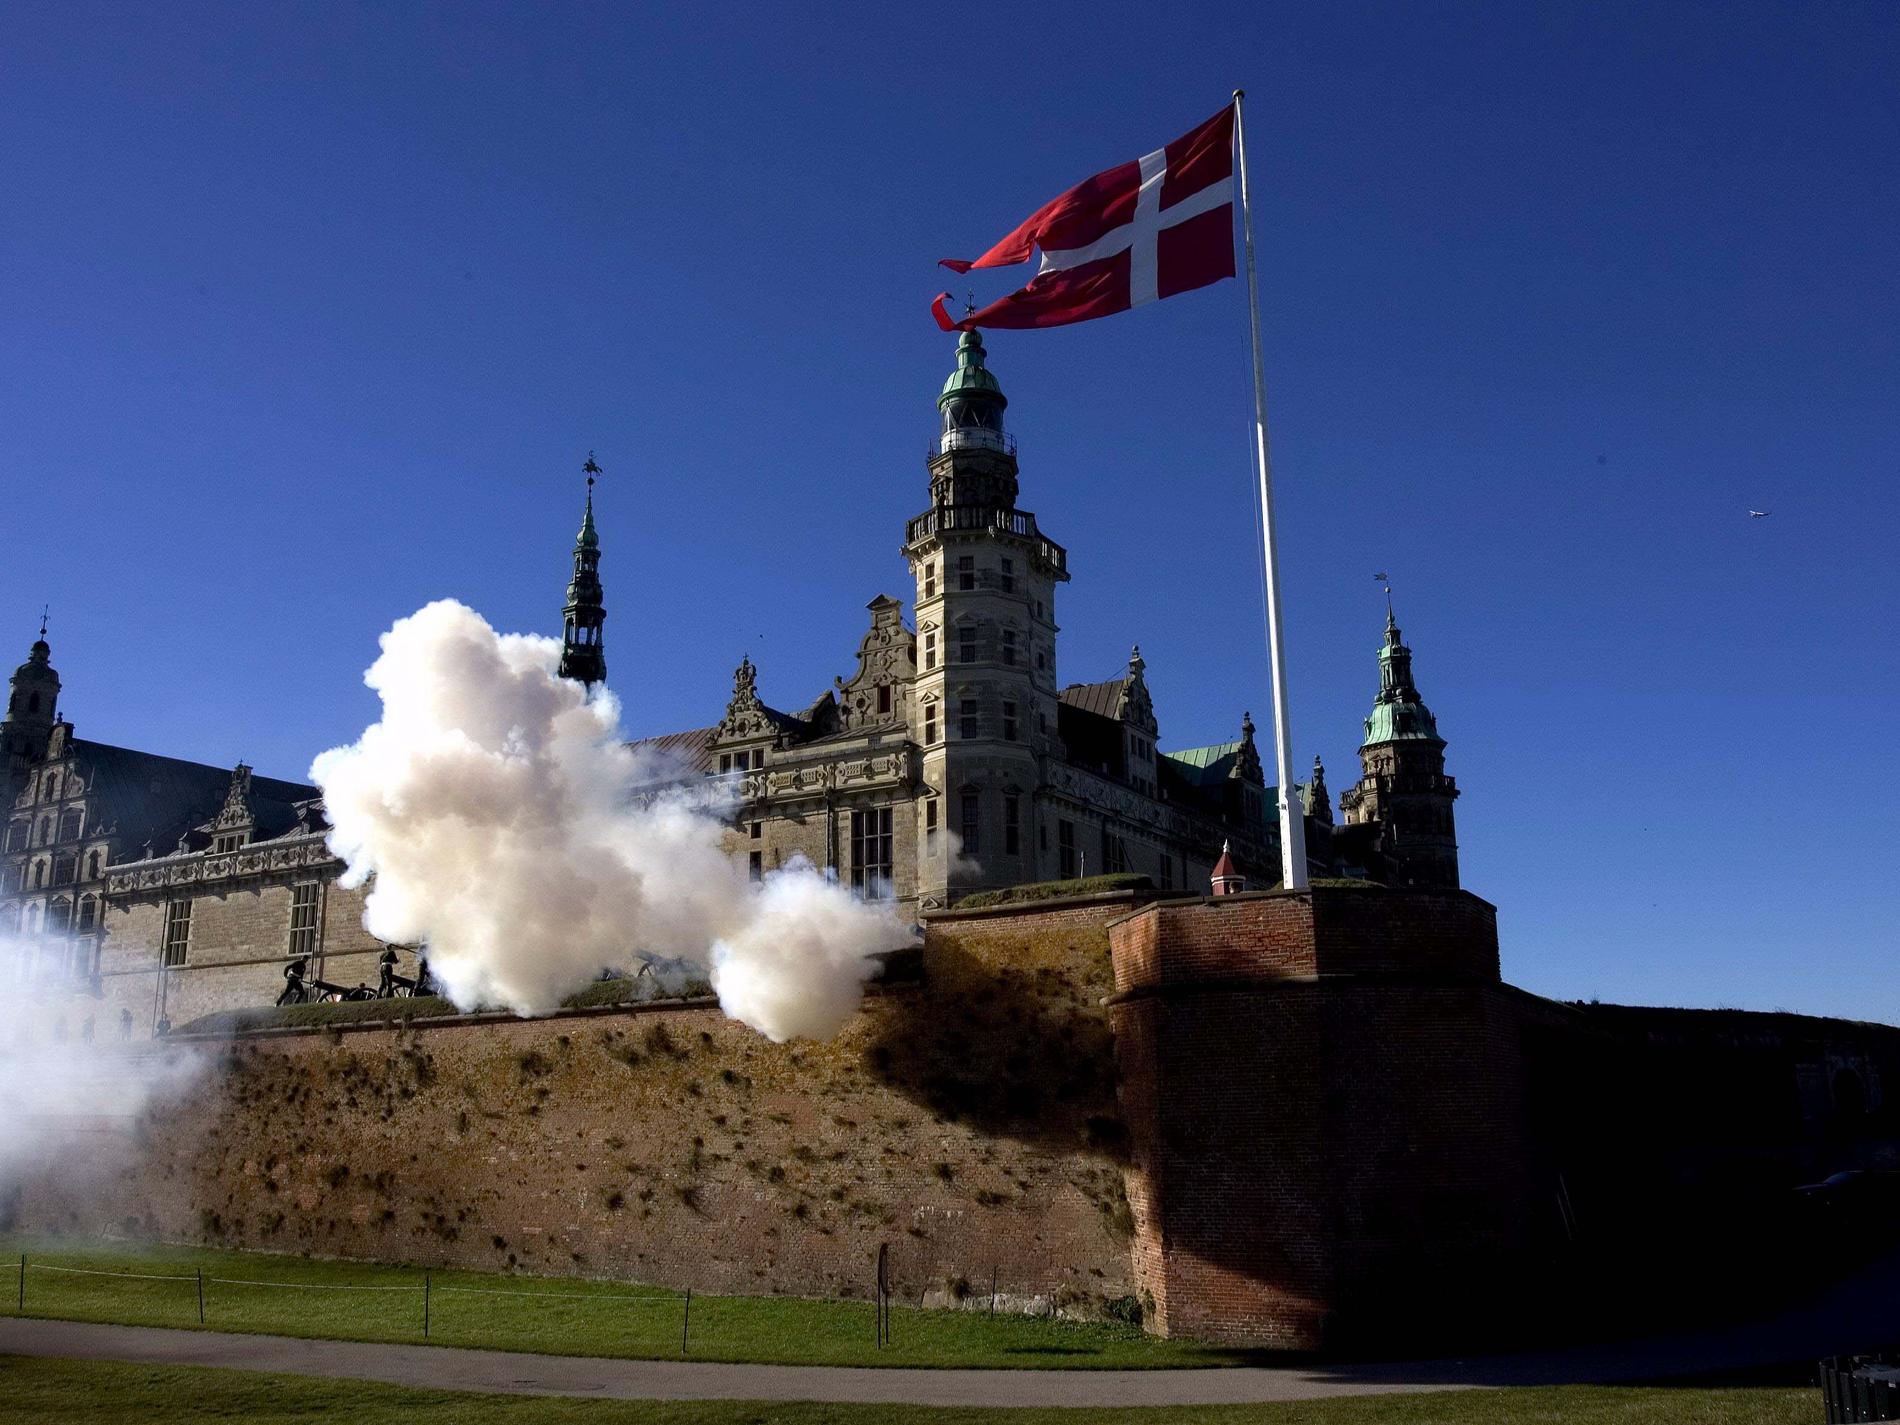 Flaggorna tillbaka på Kronborg